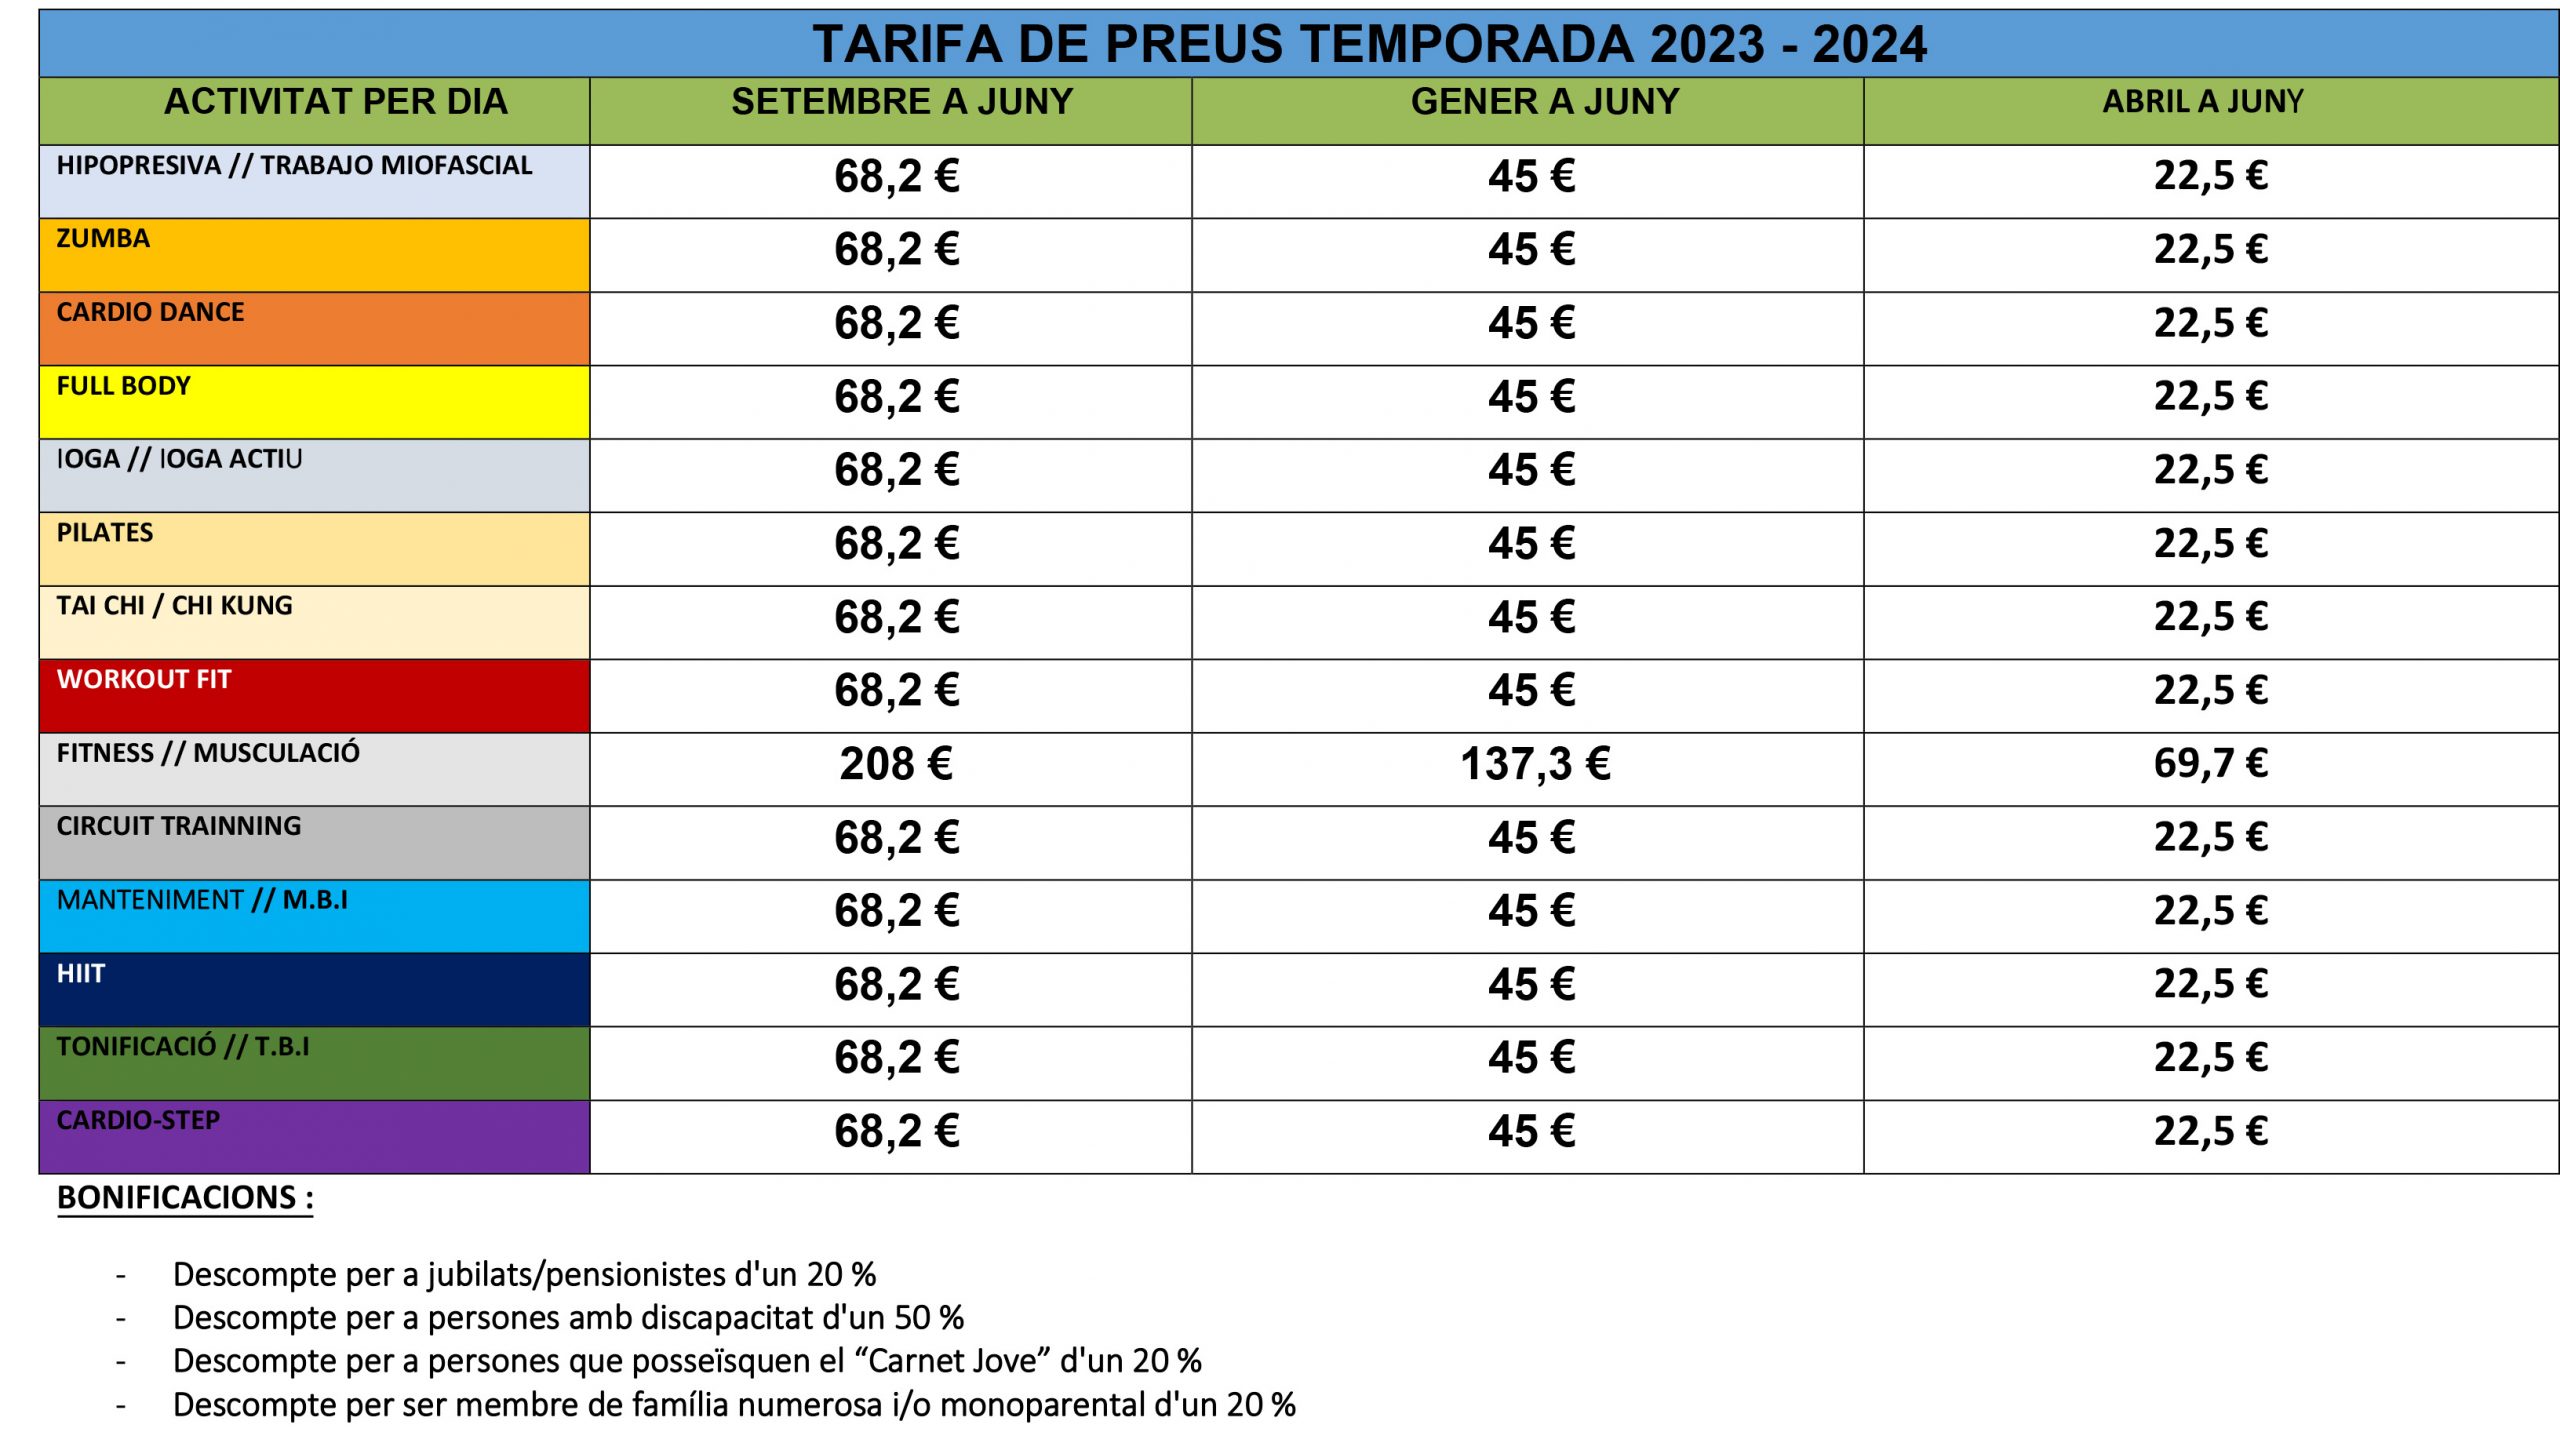 TARIFA PRECIOS ACTIVIDADES GIMNASIO MUNICIPAL 2023-2024 VLC